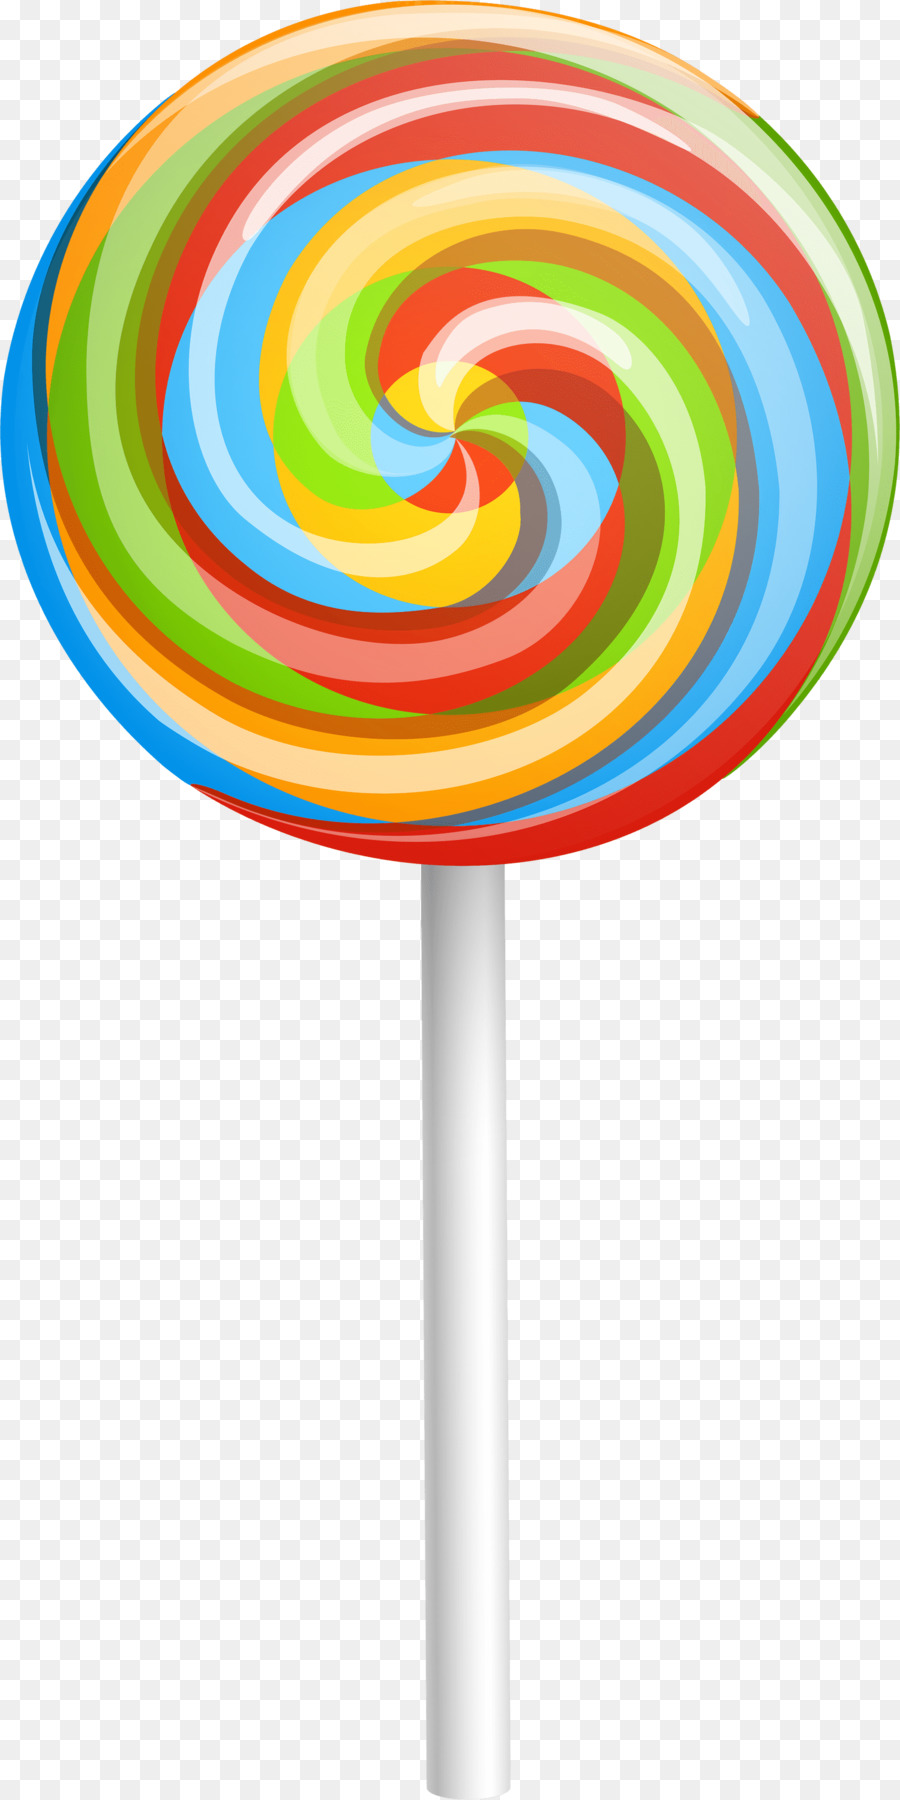 Lollipop Candy Drawing Clip art - lollipop png download - 1500*3000 - Free Transparent Lollipop png Download.